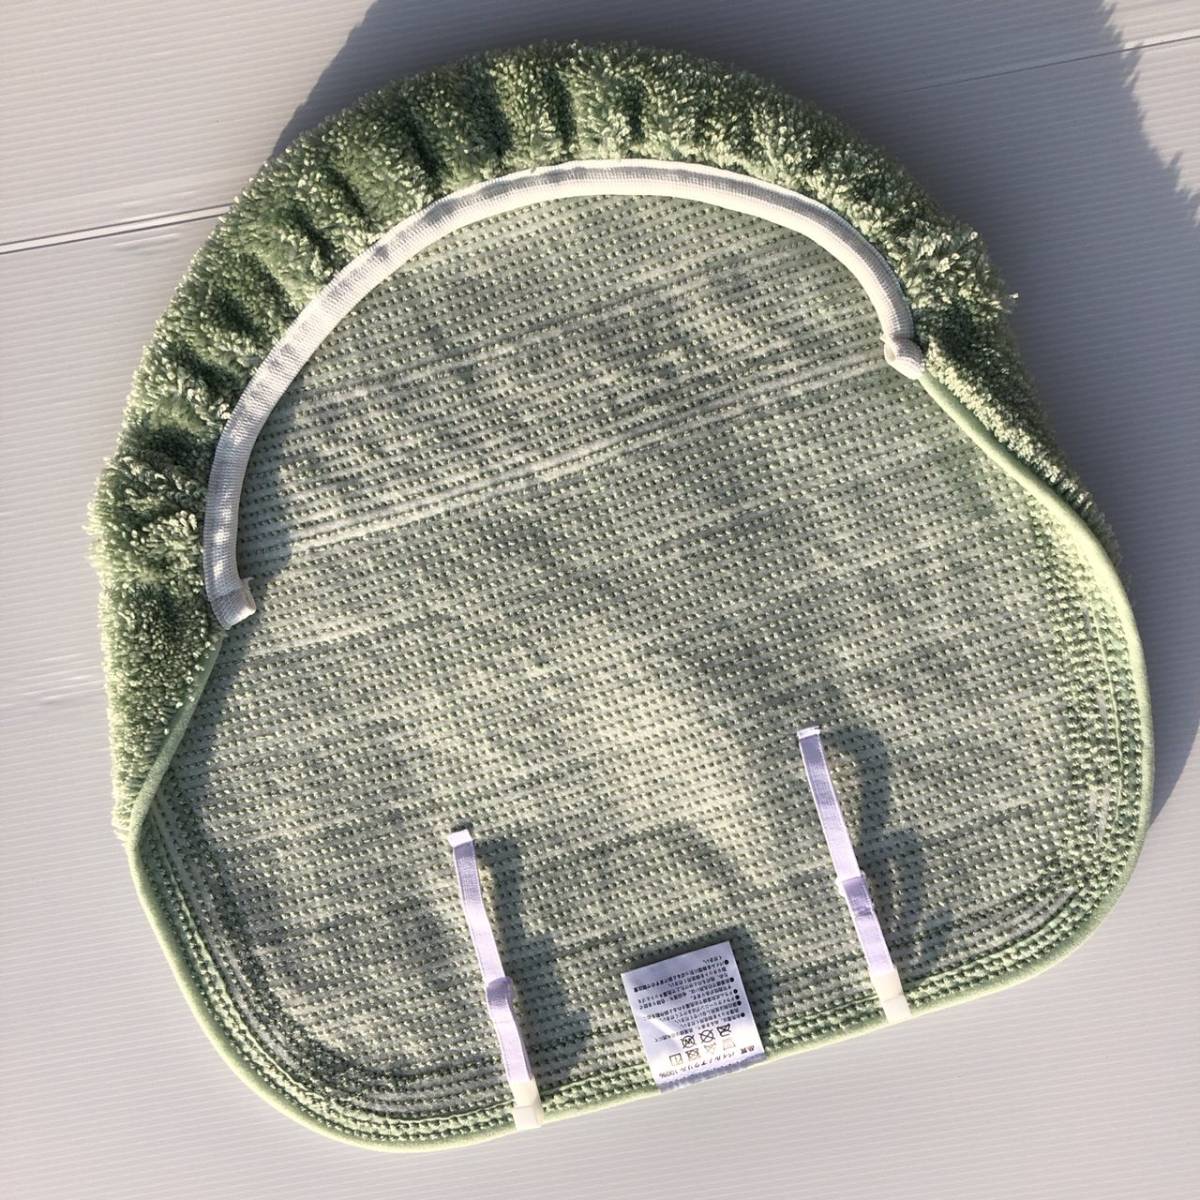 boruga туалет коврик крышка комплект крышек ( зеленый ) новый товар [ сделано в Японии ]